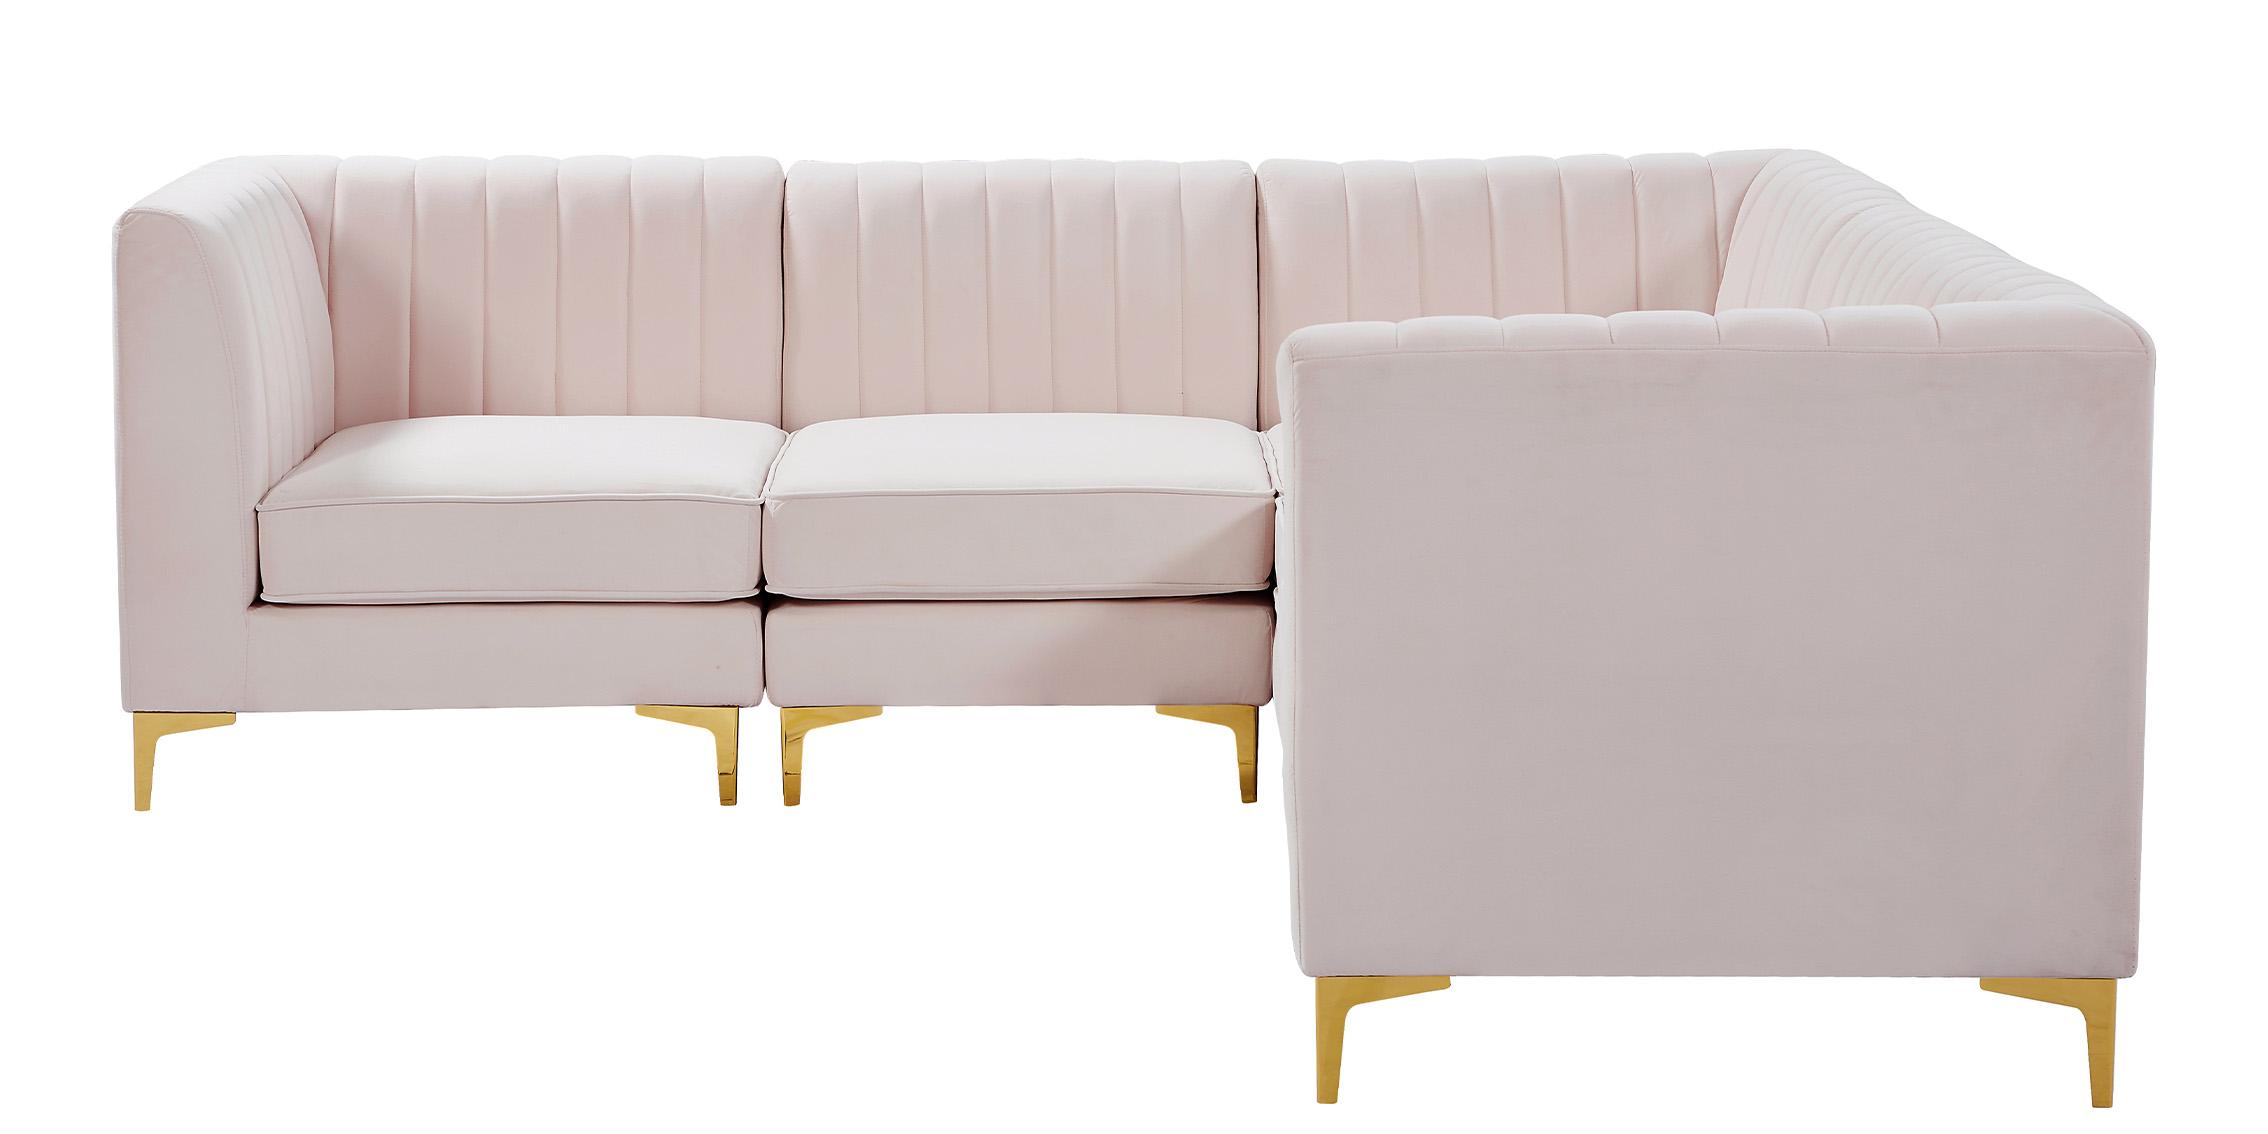 

    
Meridian Furniture ALINA 604Pink-Sec5C Modular Sectional Sofa Pink 604Pink-Sec5C
